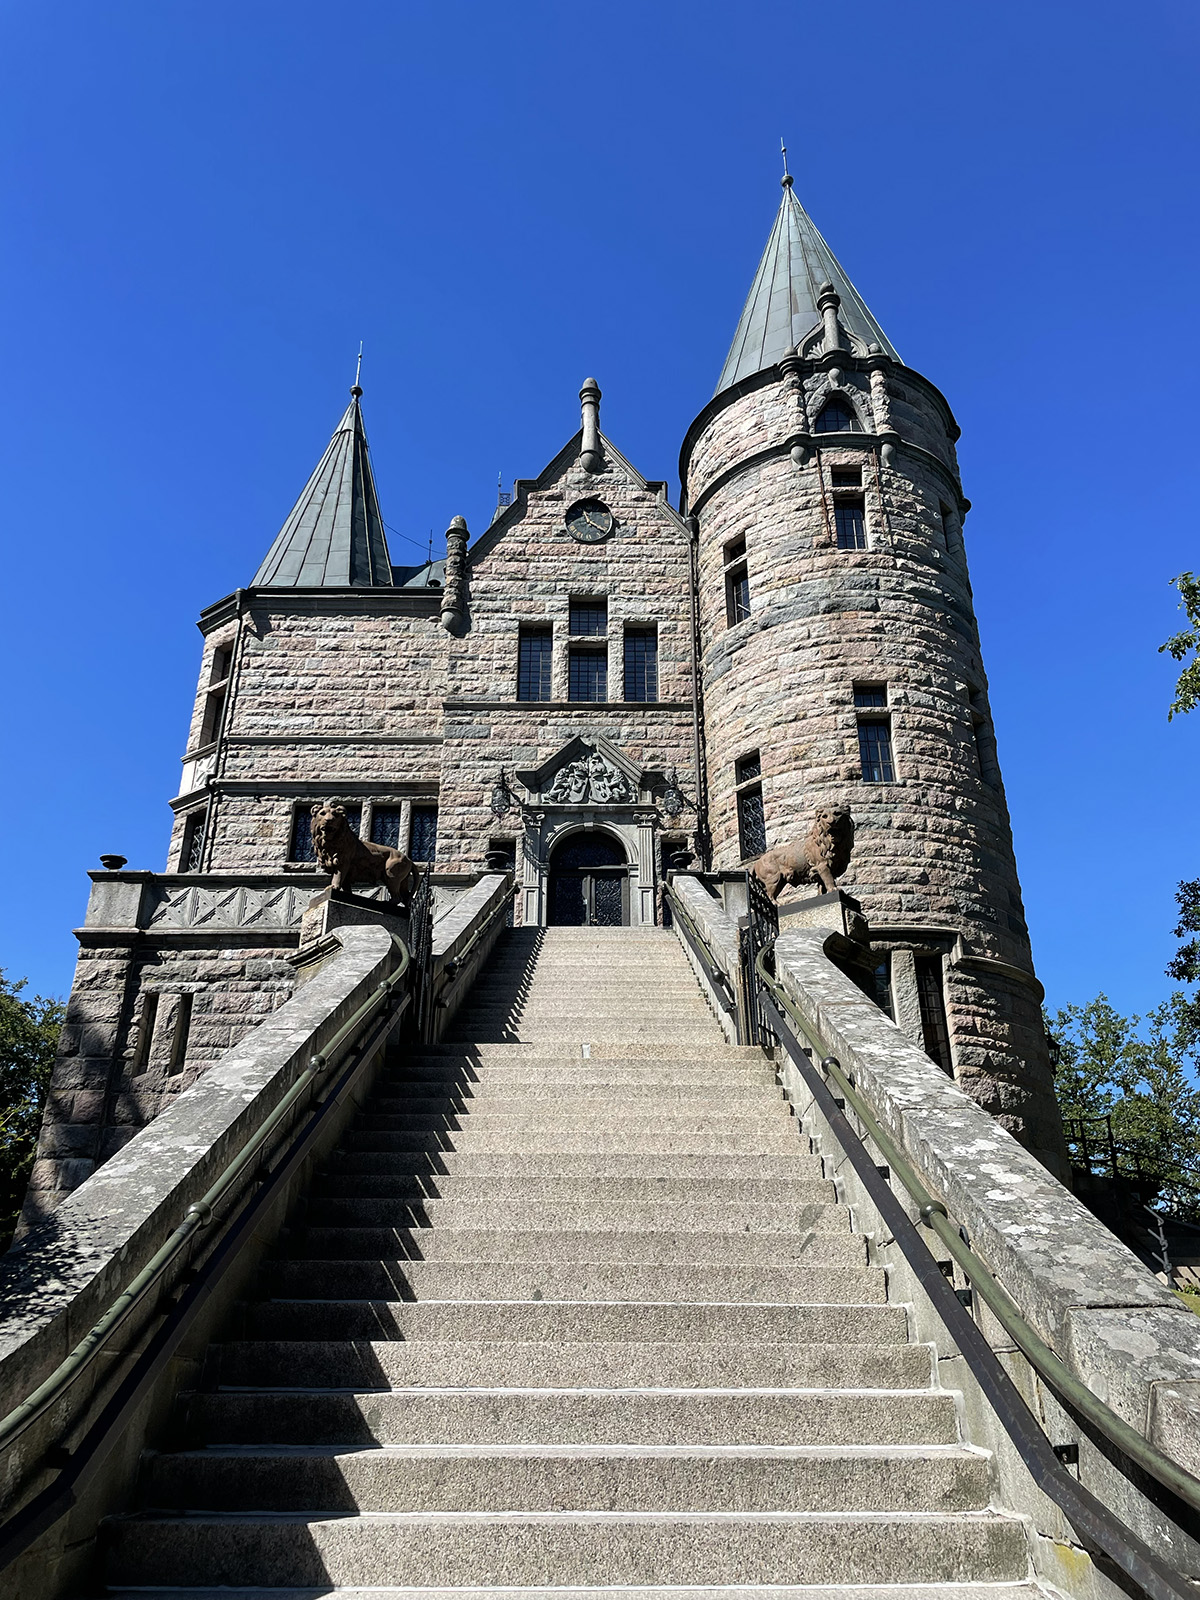 Teleborgs slott är det coolaste